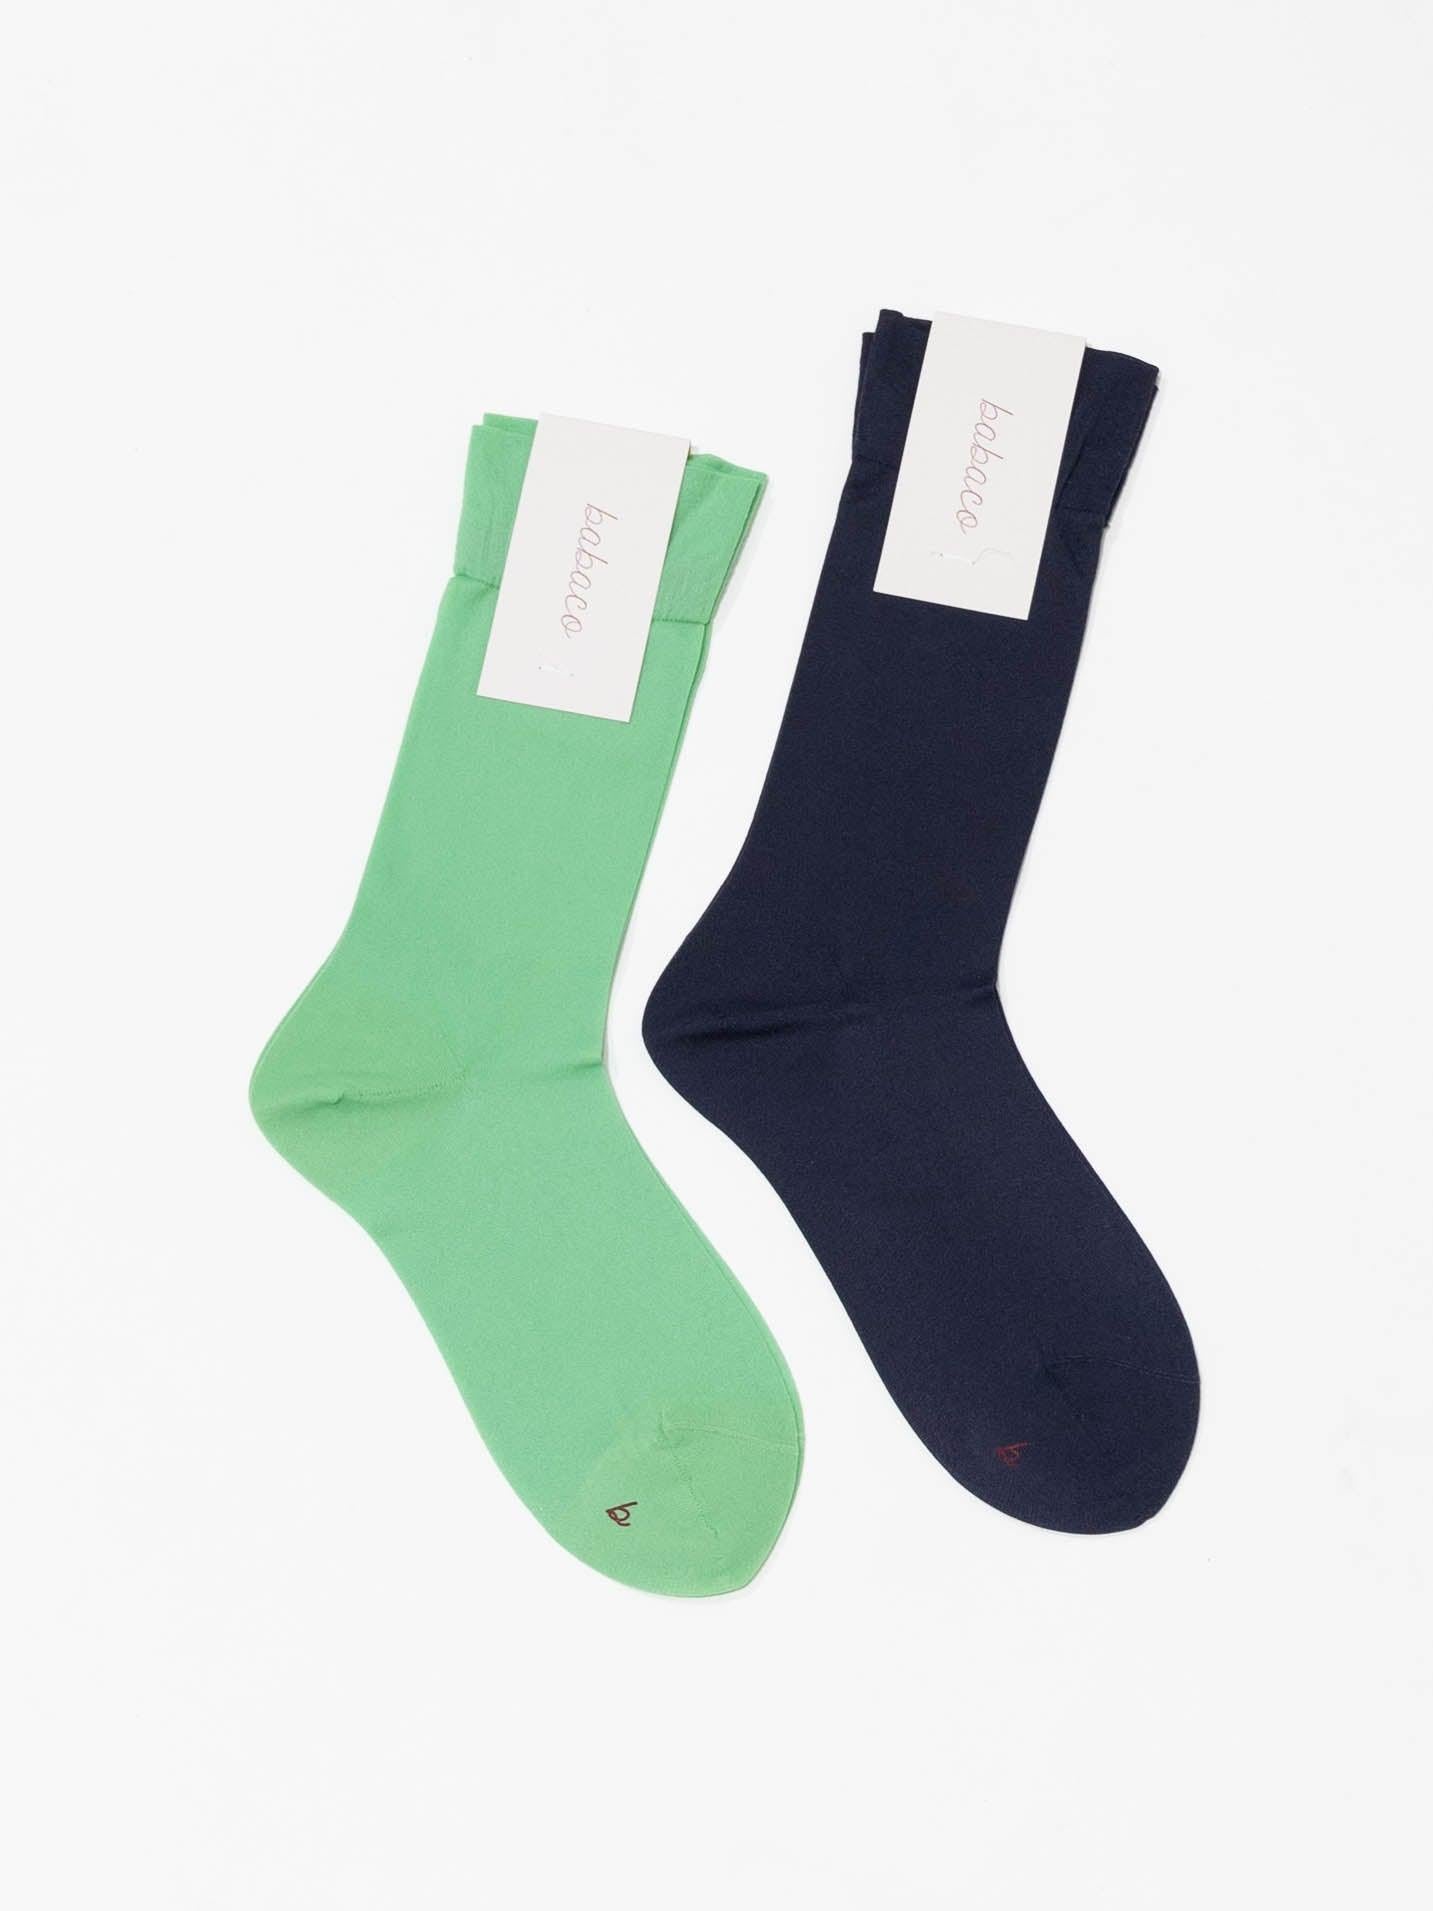 Namu Shop - Babaco 2 Pairs of Sheer Socks - Jade, Navy